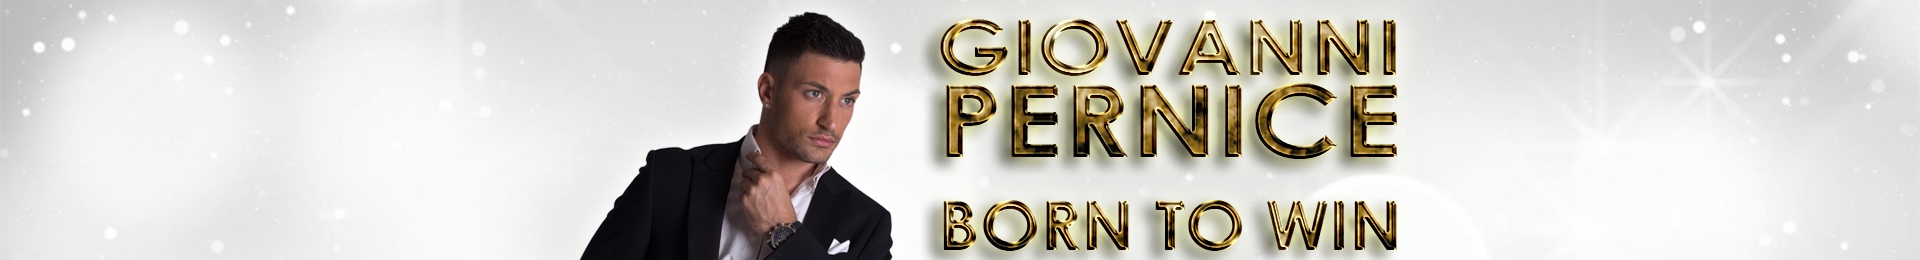 Giovanni Pernice: Born To Win banner image